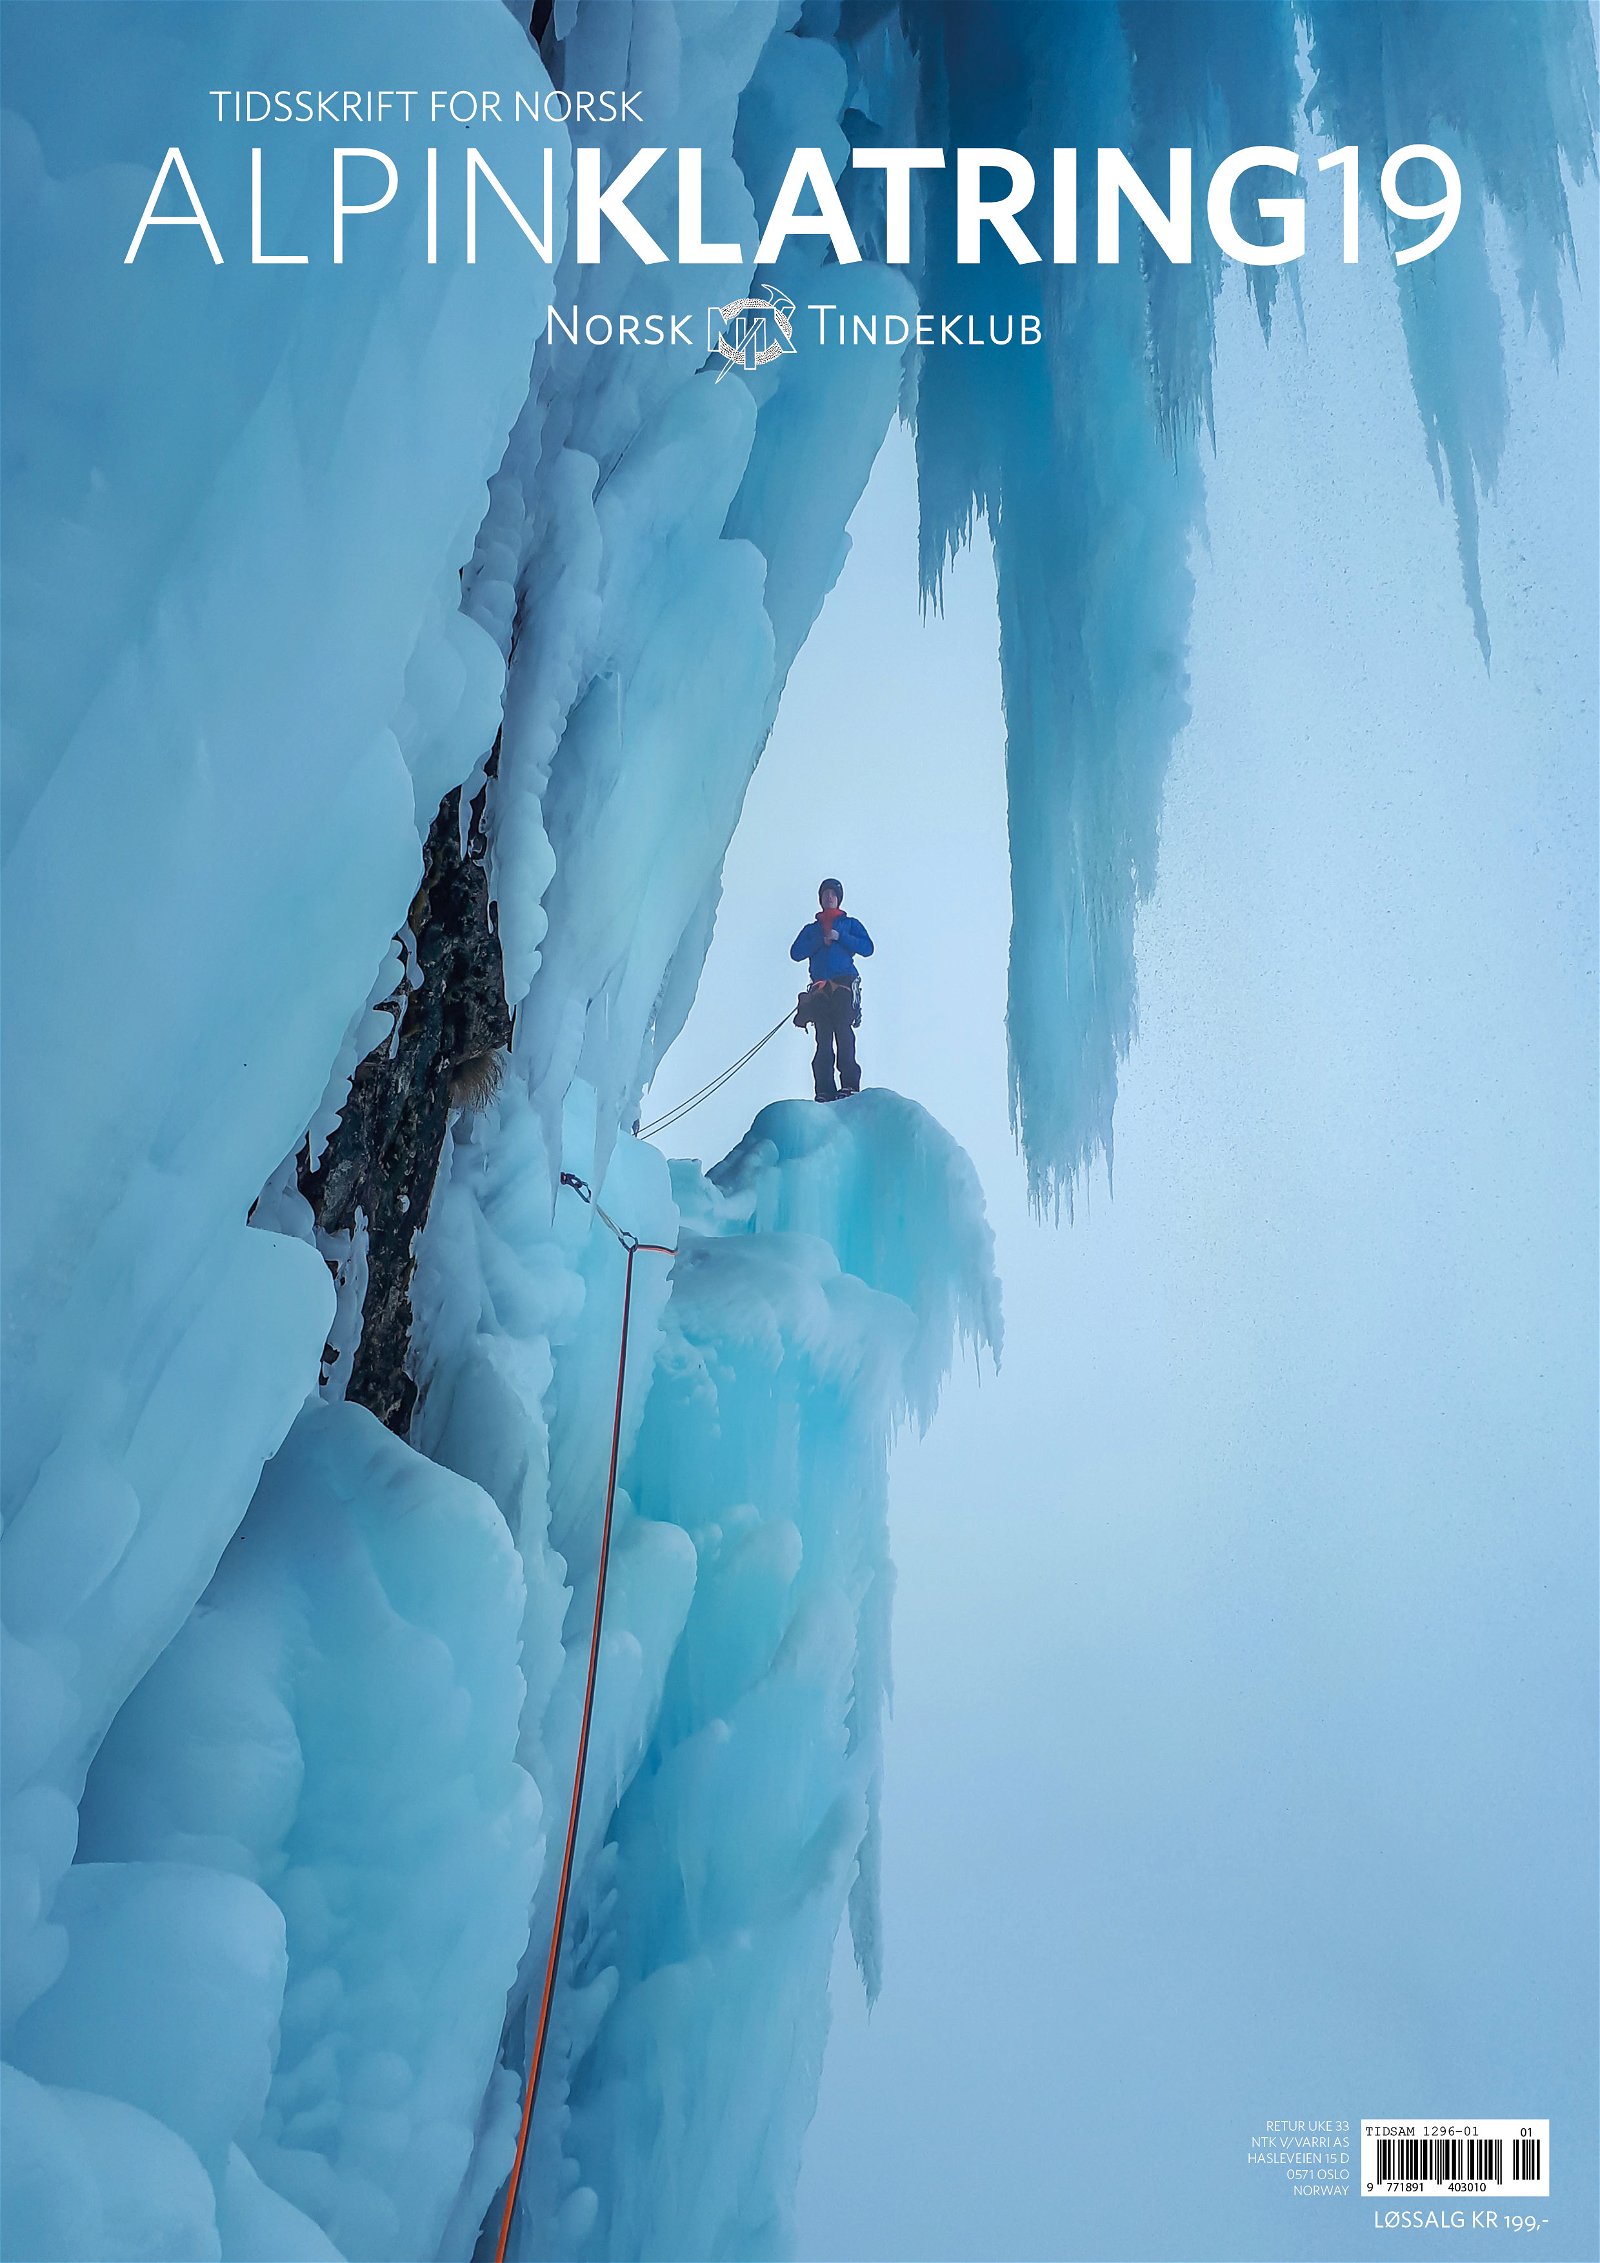 Tidsskrift for Norsk Alpinklatring 2019